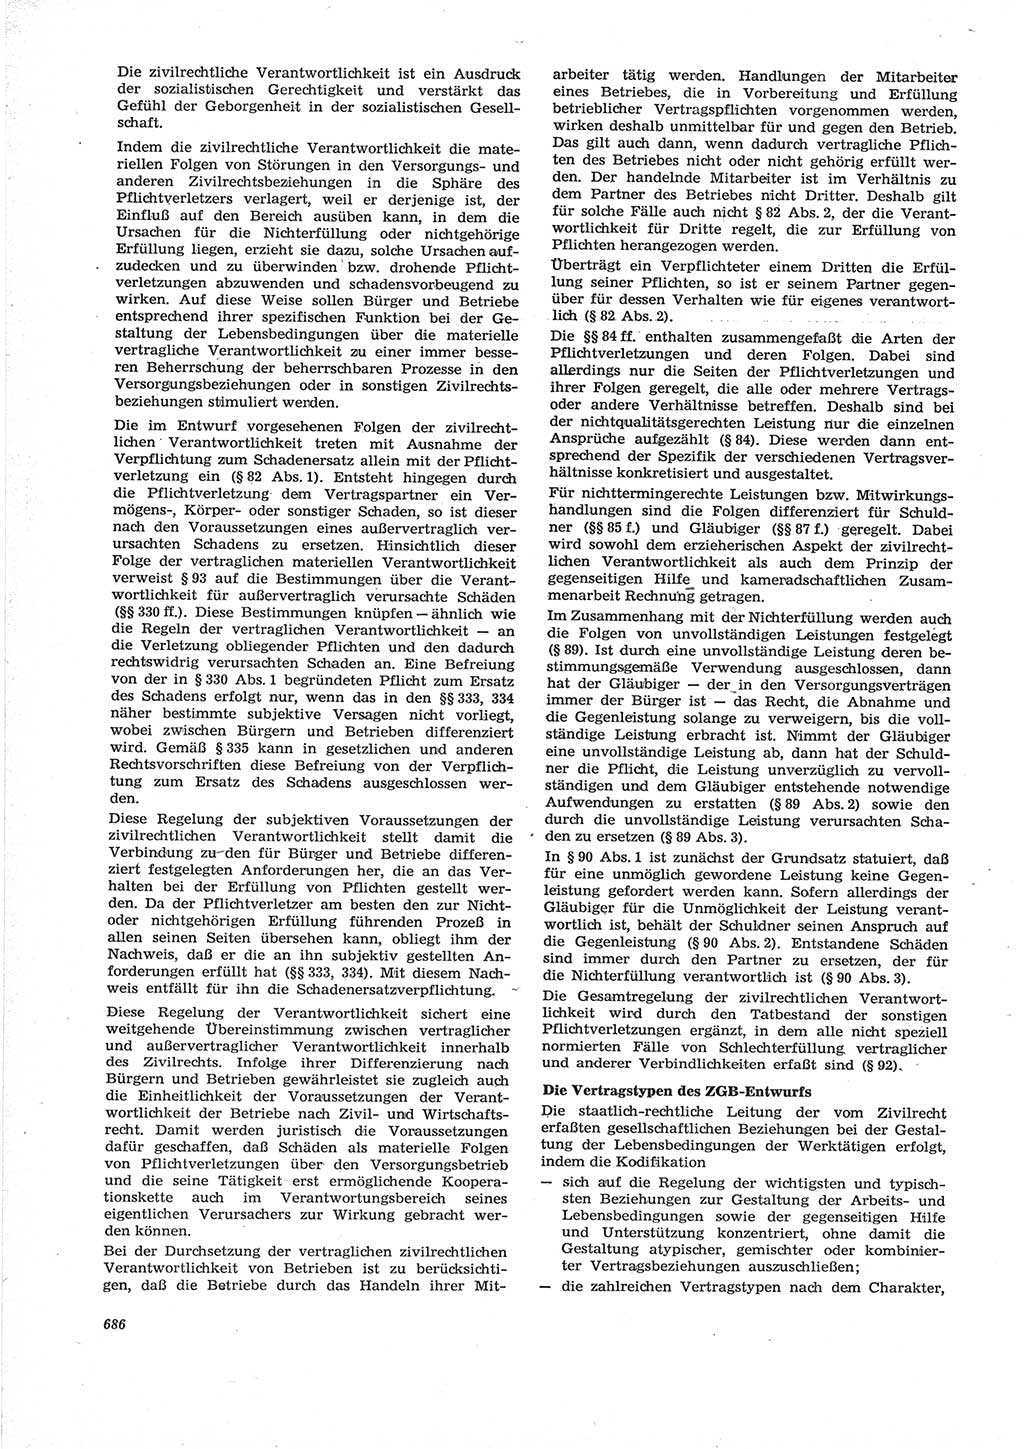 Neue Justiz (NJ), Zeitschrift für Recht und Rechtswissenschaft [Deutsche Demokratische Republik (DDR)], 28. Jahrgang 1974, Seite 686 (NJ DDR 1974, S. 686)